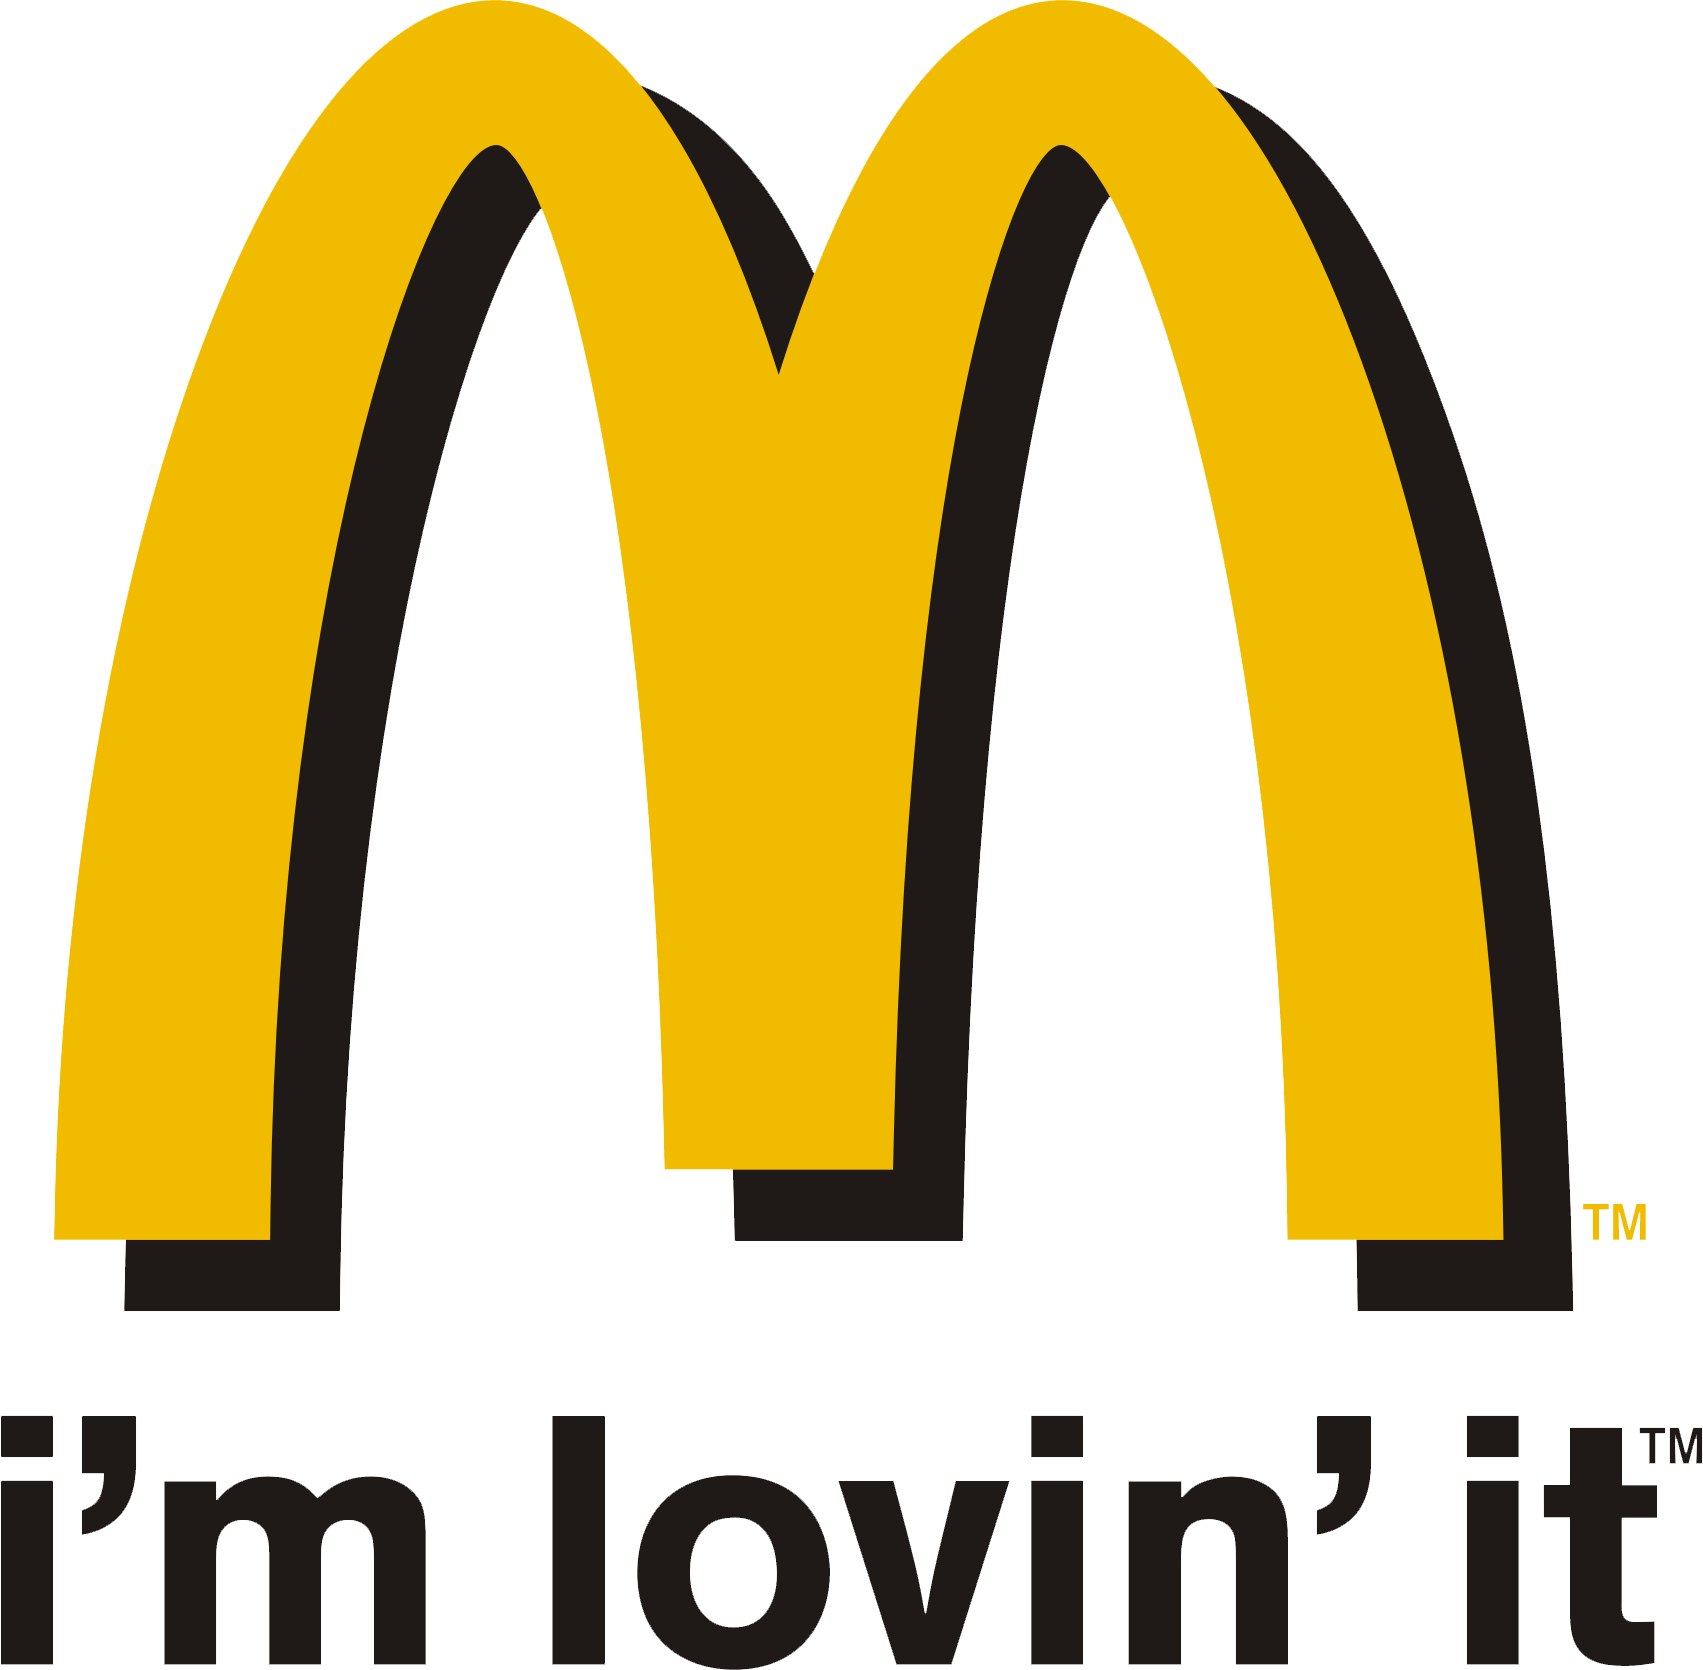 McDonald's Coupons